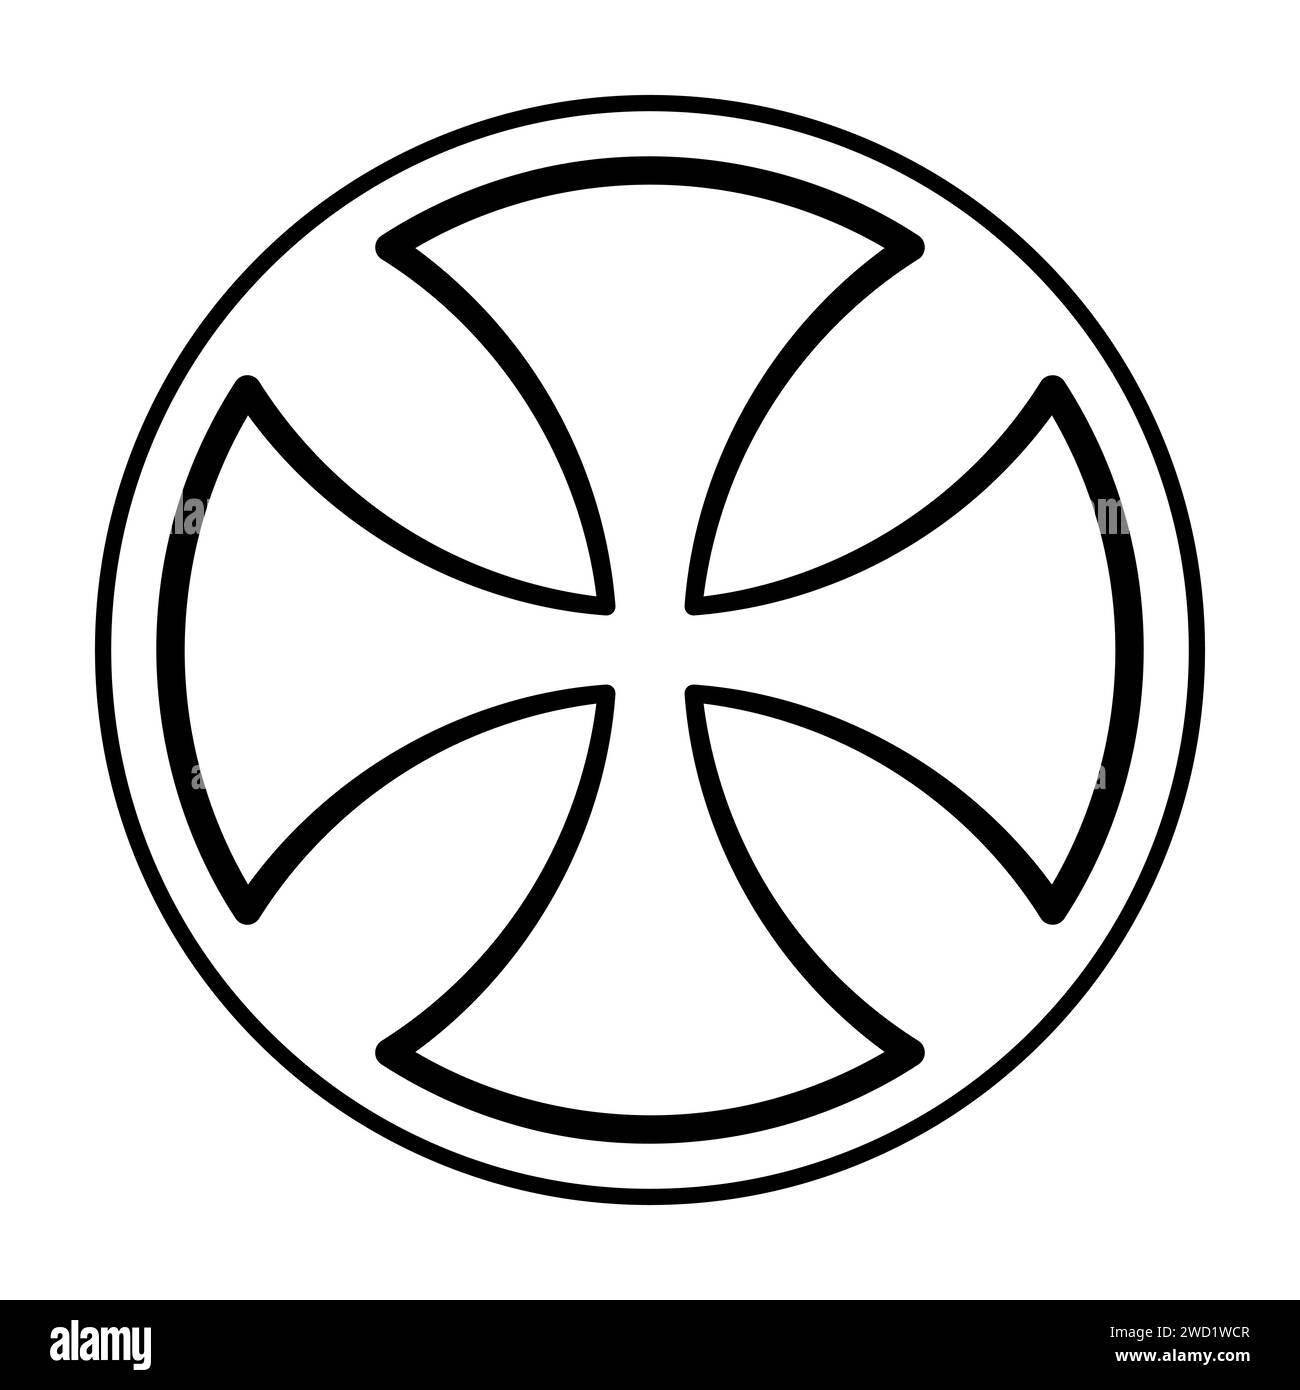 Frühes keltisches Kreuz, ein Kreuzpatty, mit abgerundeten Enden der Arme, manchmal auch Kreuz alisee genannt, auch bekannt als Kreuzform. Symbol und Zeichen. Stockfoto